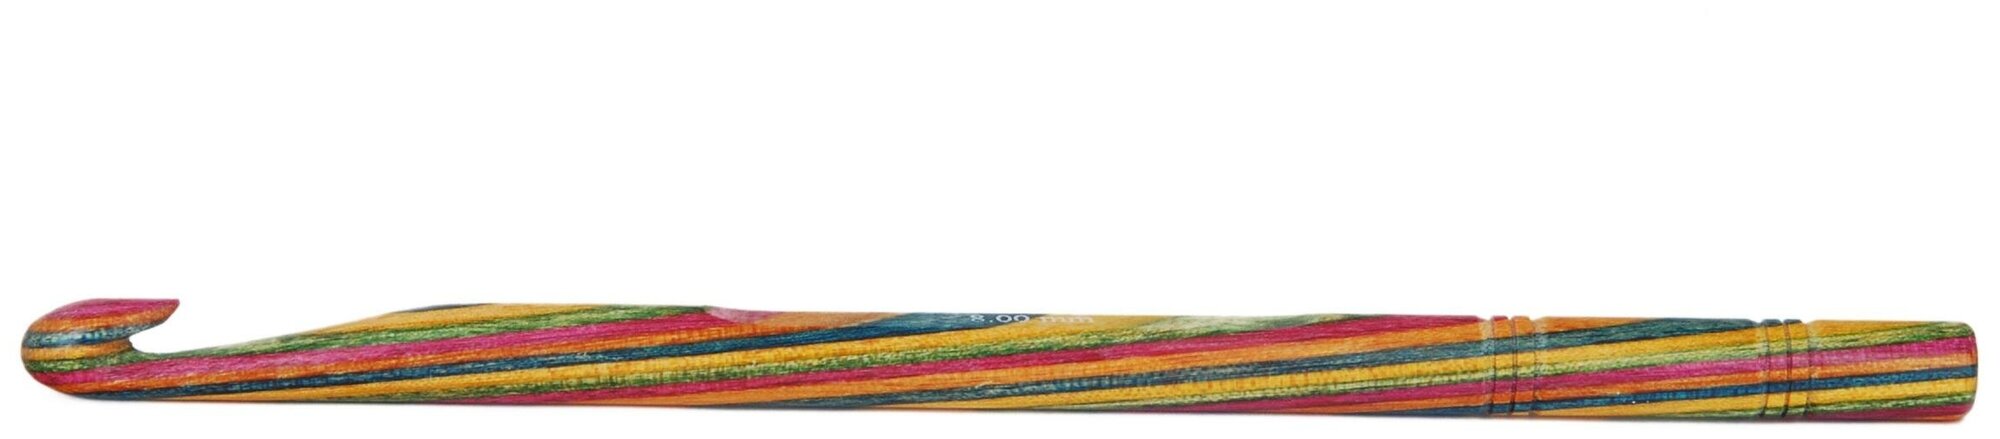 20710 Крючок вязальный односторонний Symfonie Wood KnitPro, 15 см, 6.50 мм